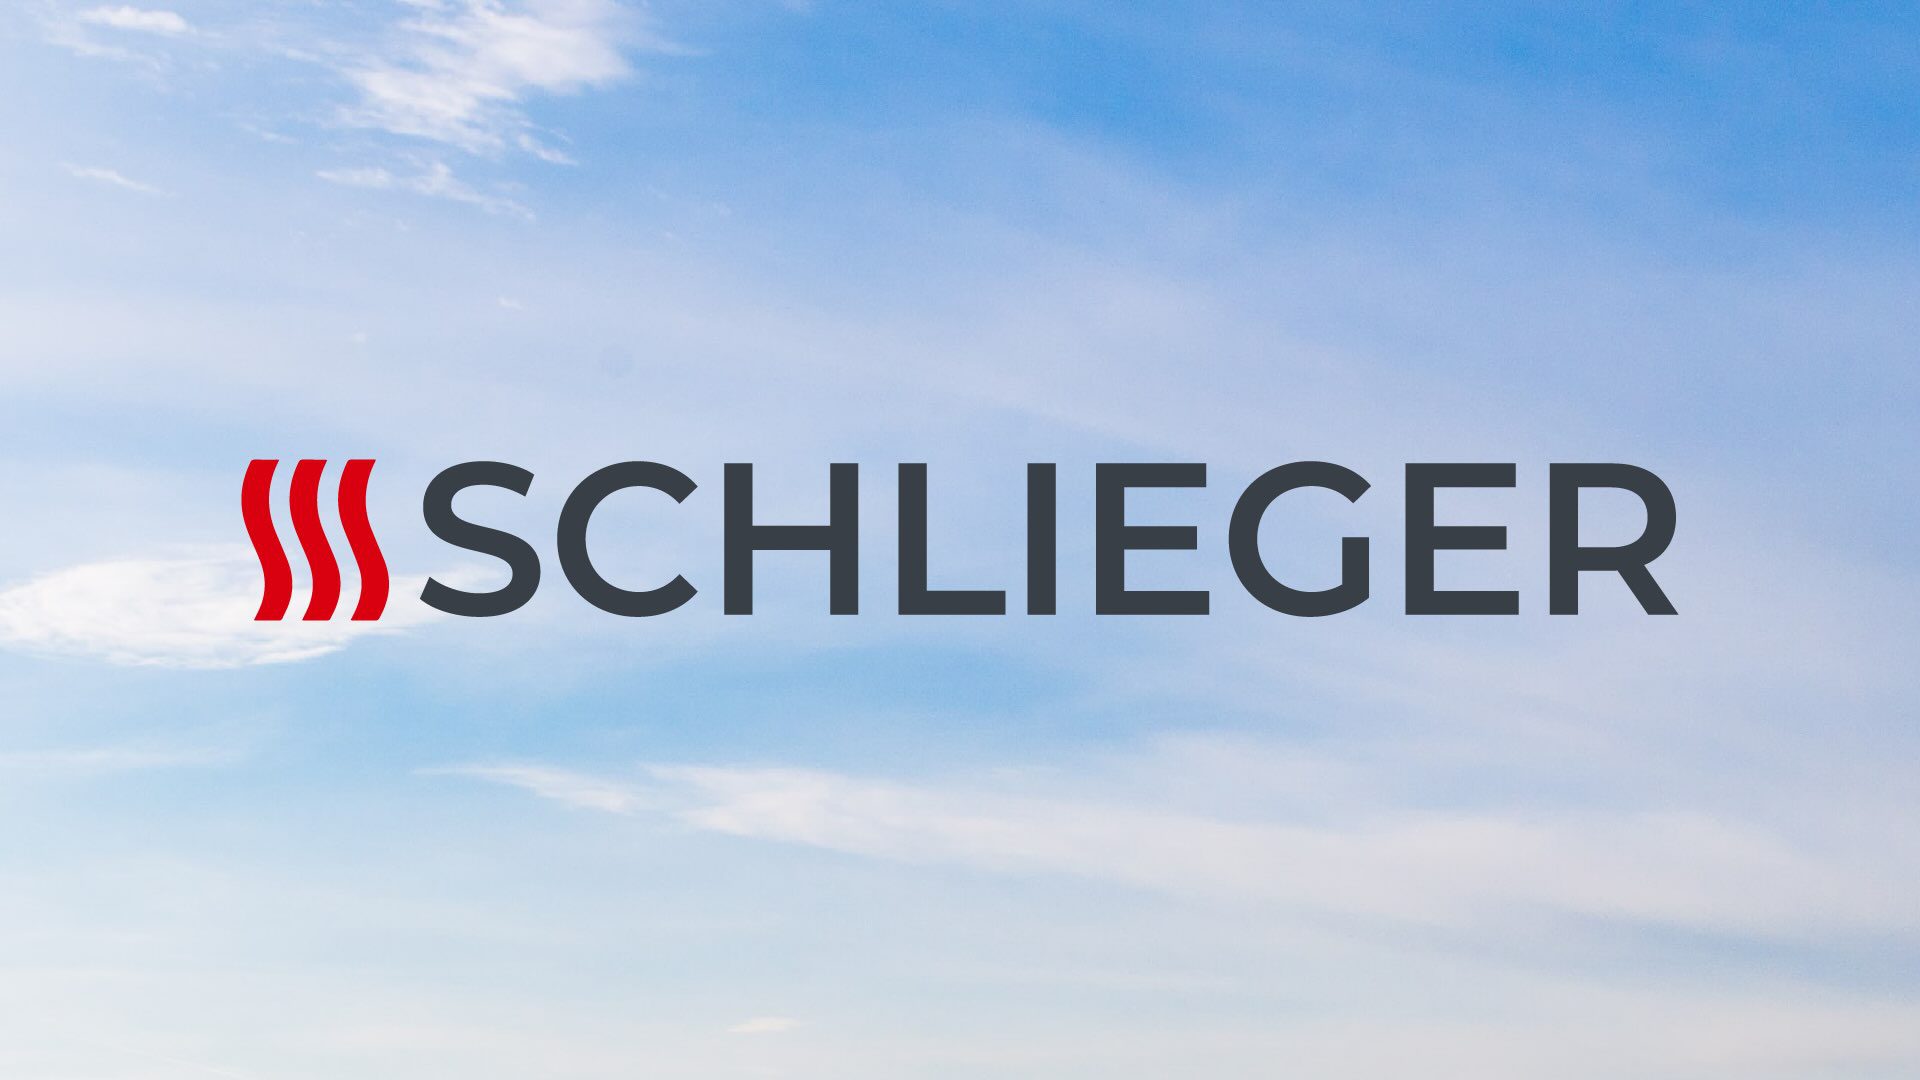 Kdo je Schlieger?